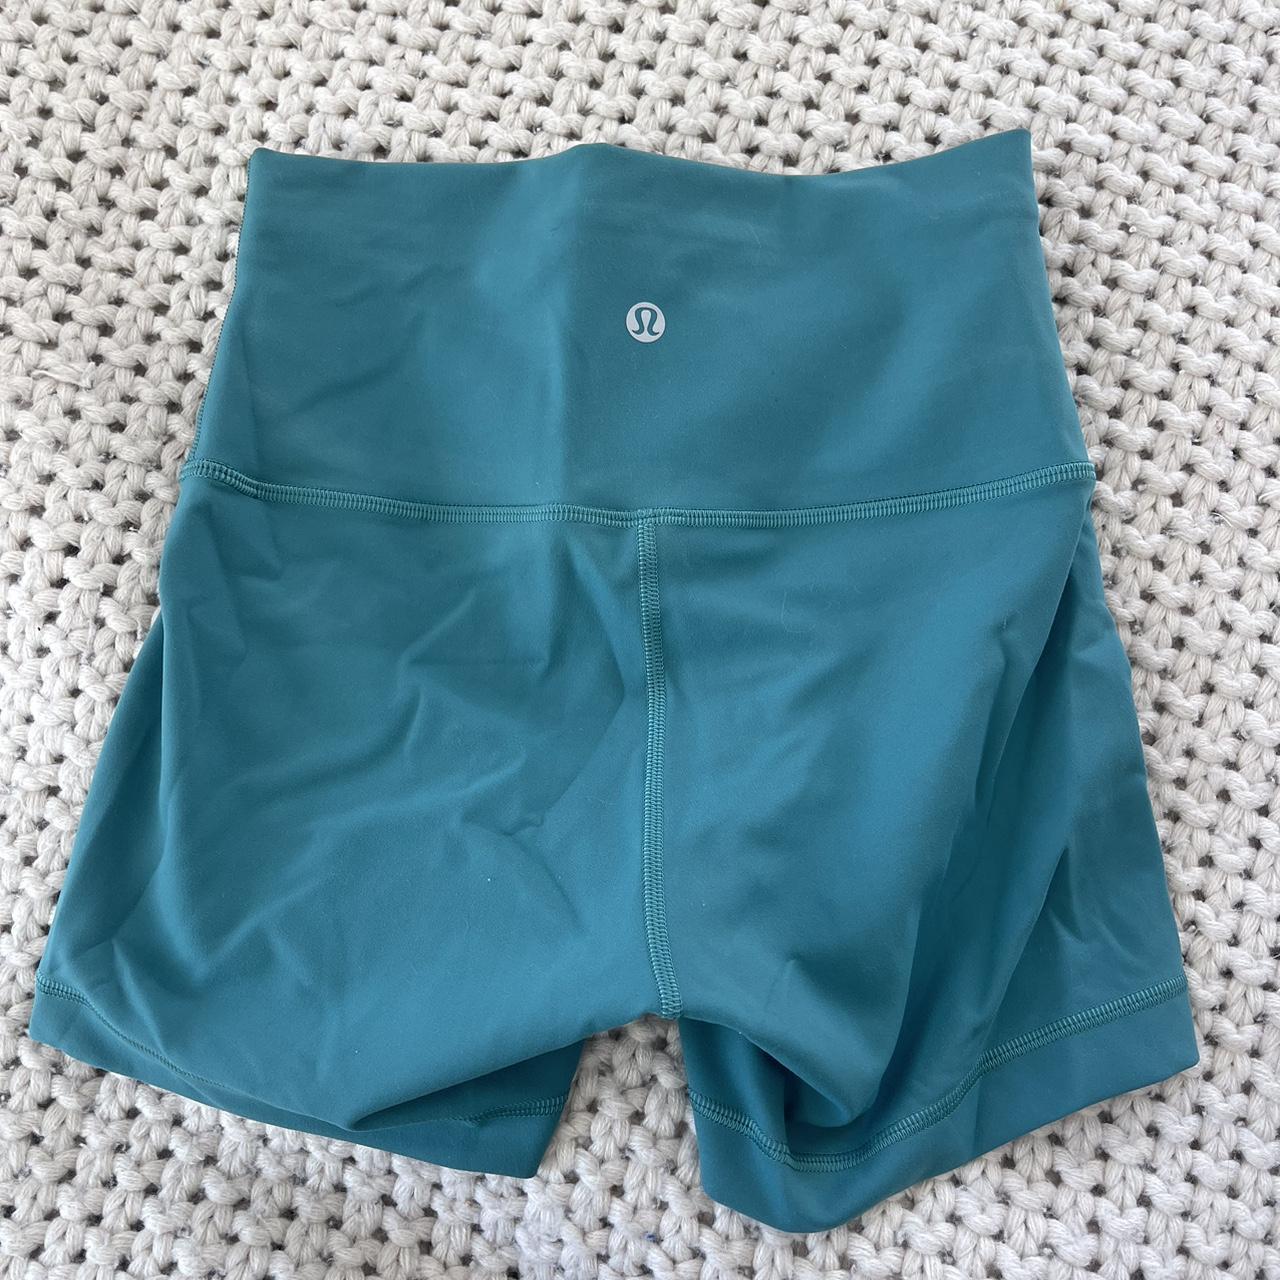 Lululemon wunder train shorts 4” utility blue. - Depop